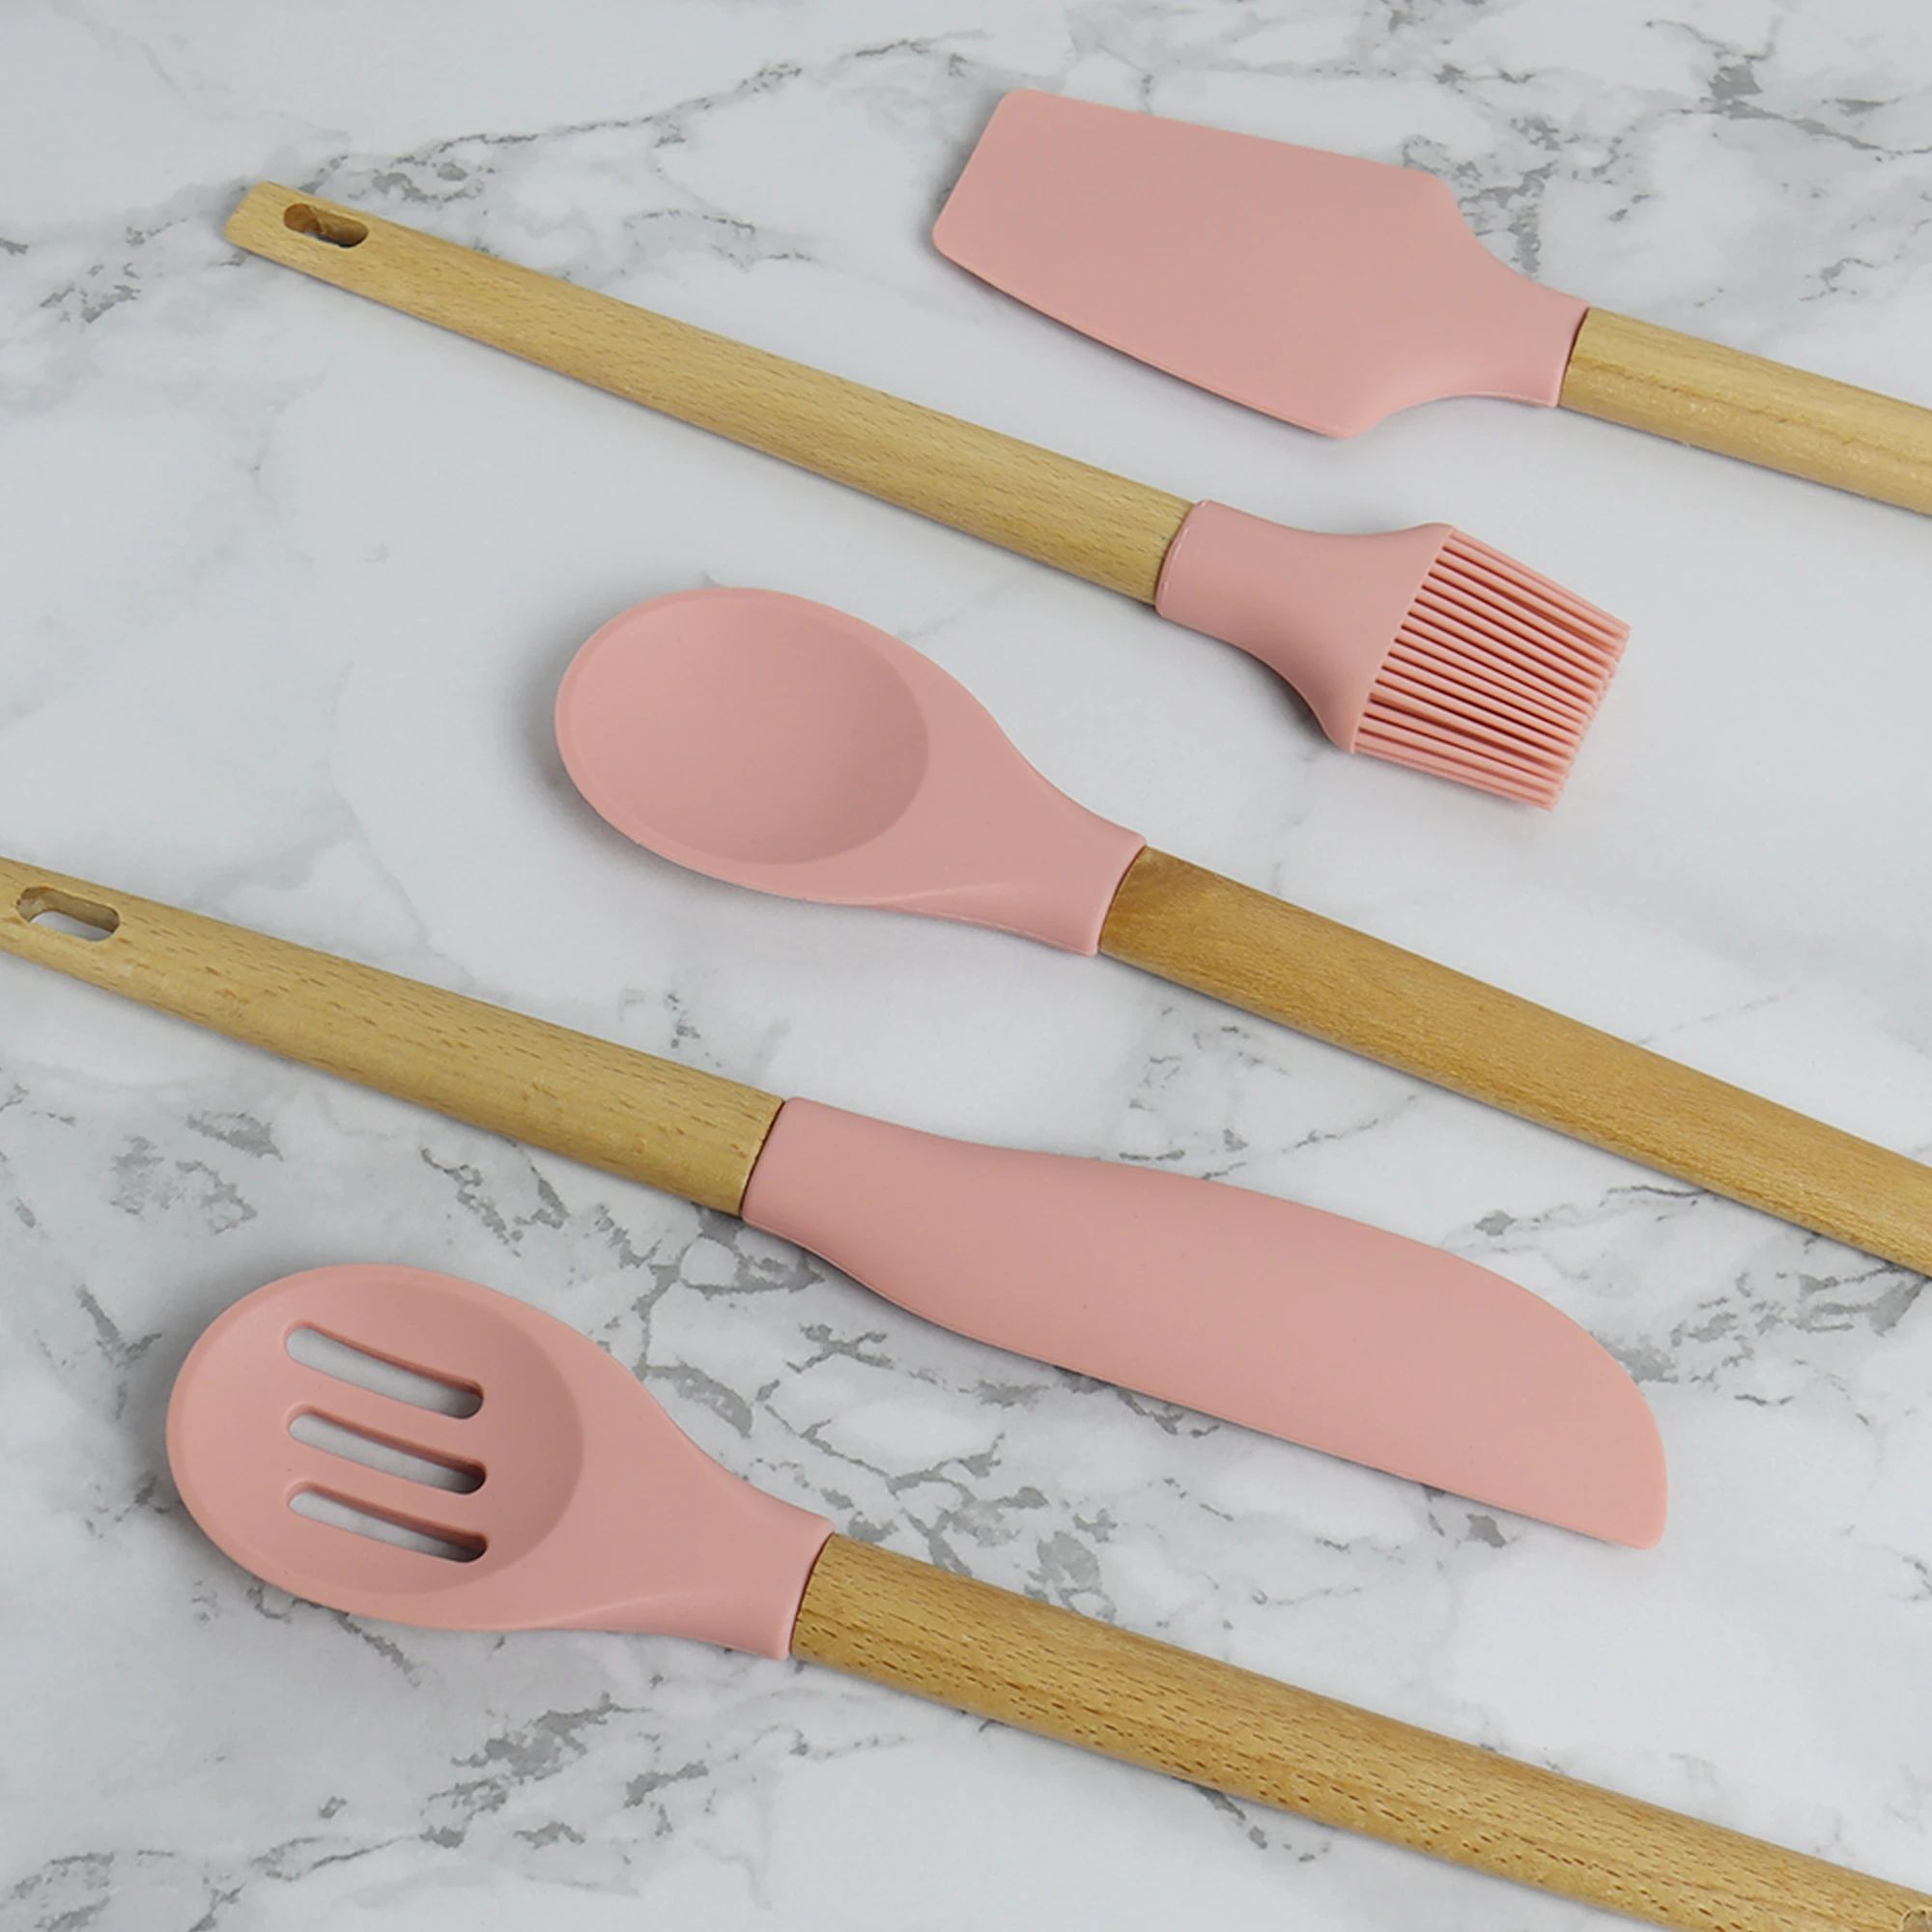 HOMZEE 5 pcs kitchenware cooking utensils silicone set kitchen accessories 